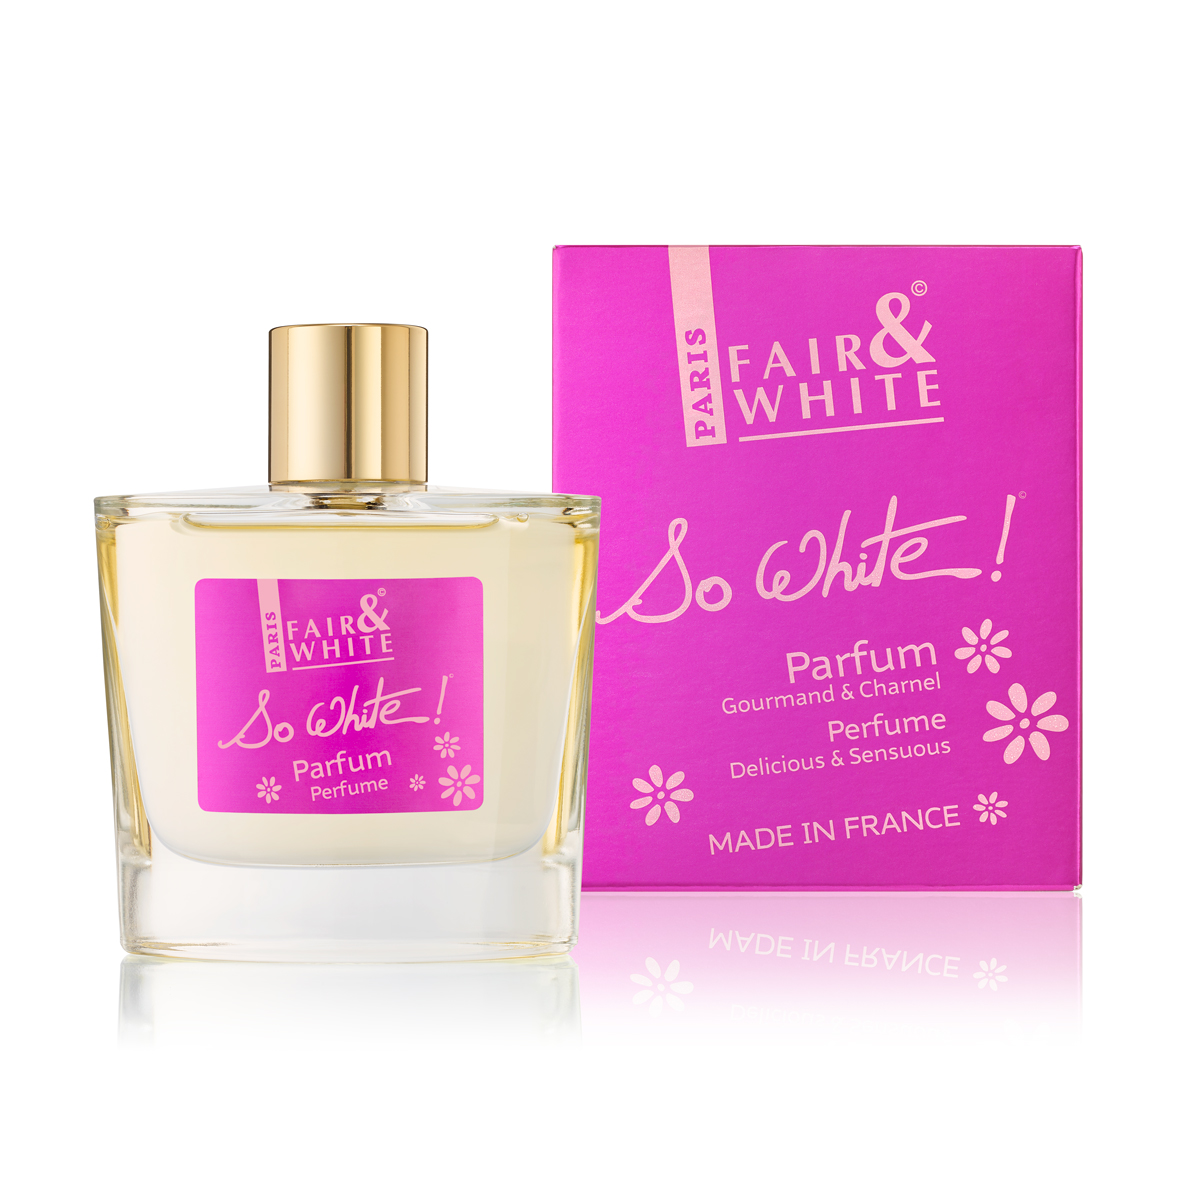 Perfume |So White